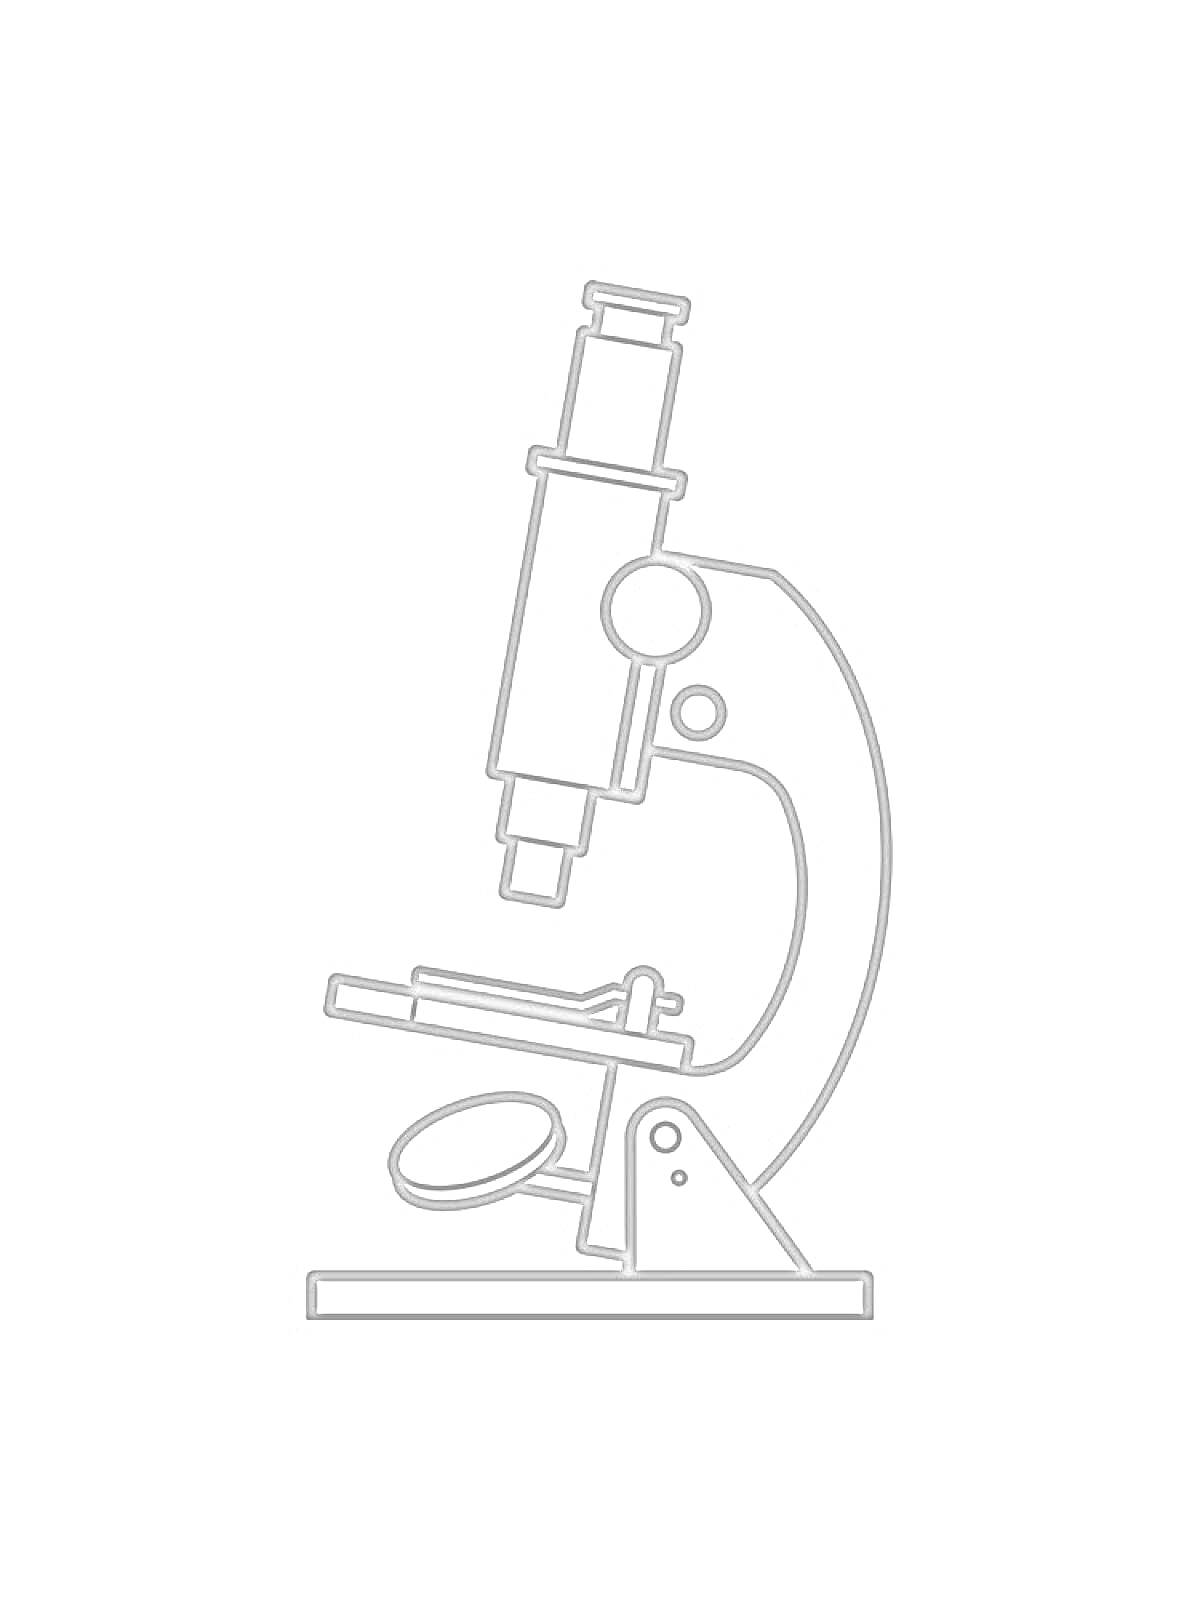 Рисунок микроскопа с объективом, окуляром, предметным столиком и держателем